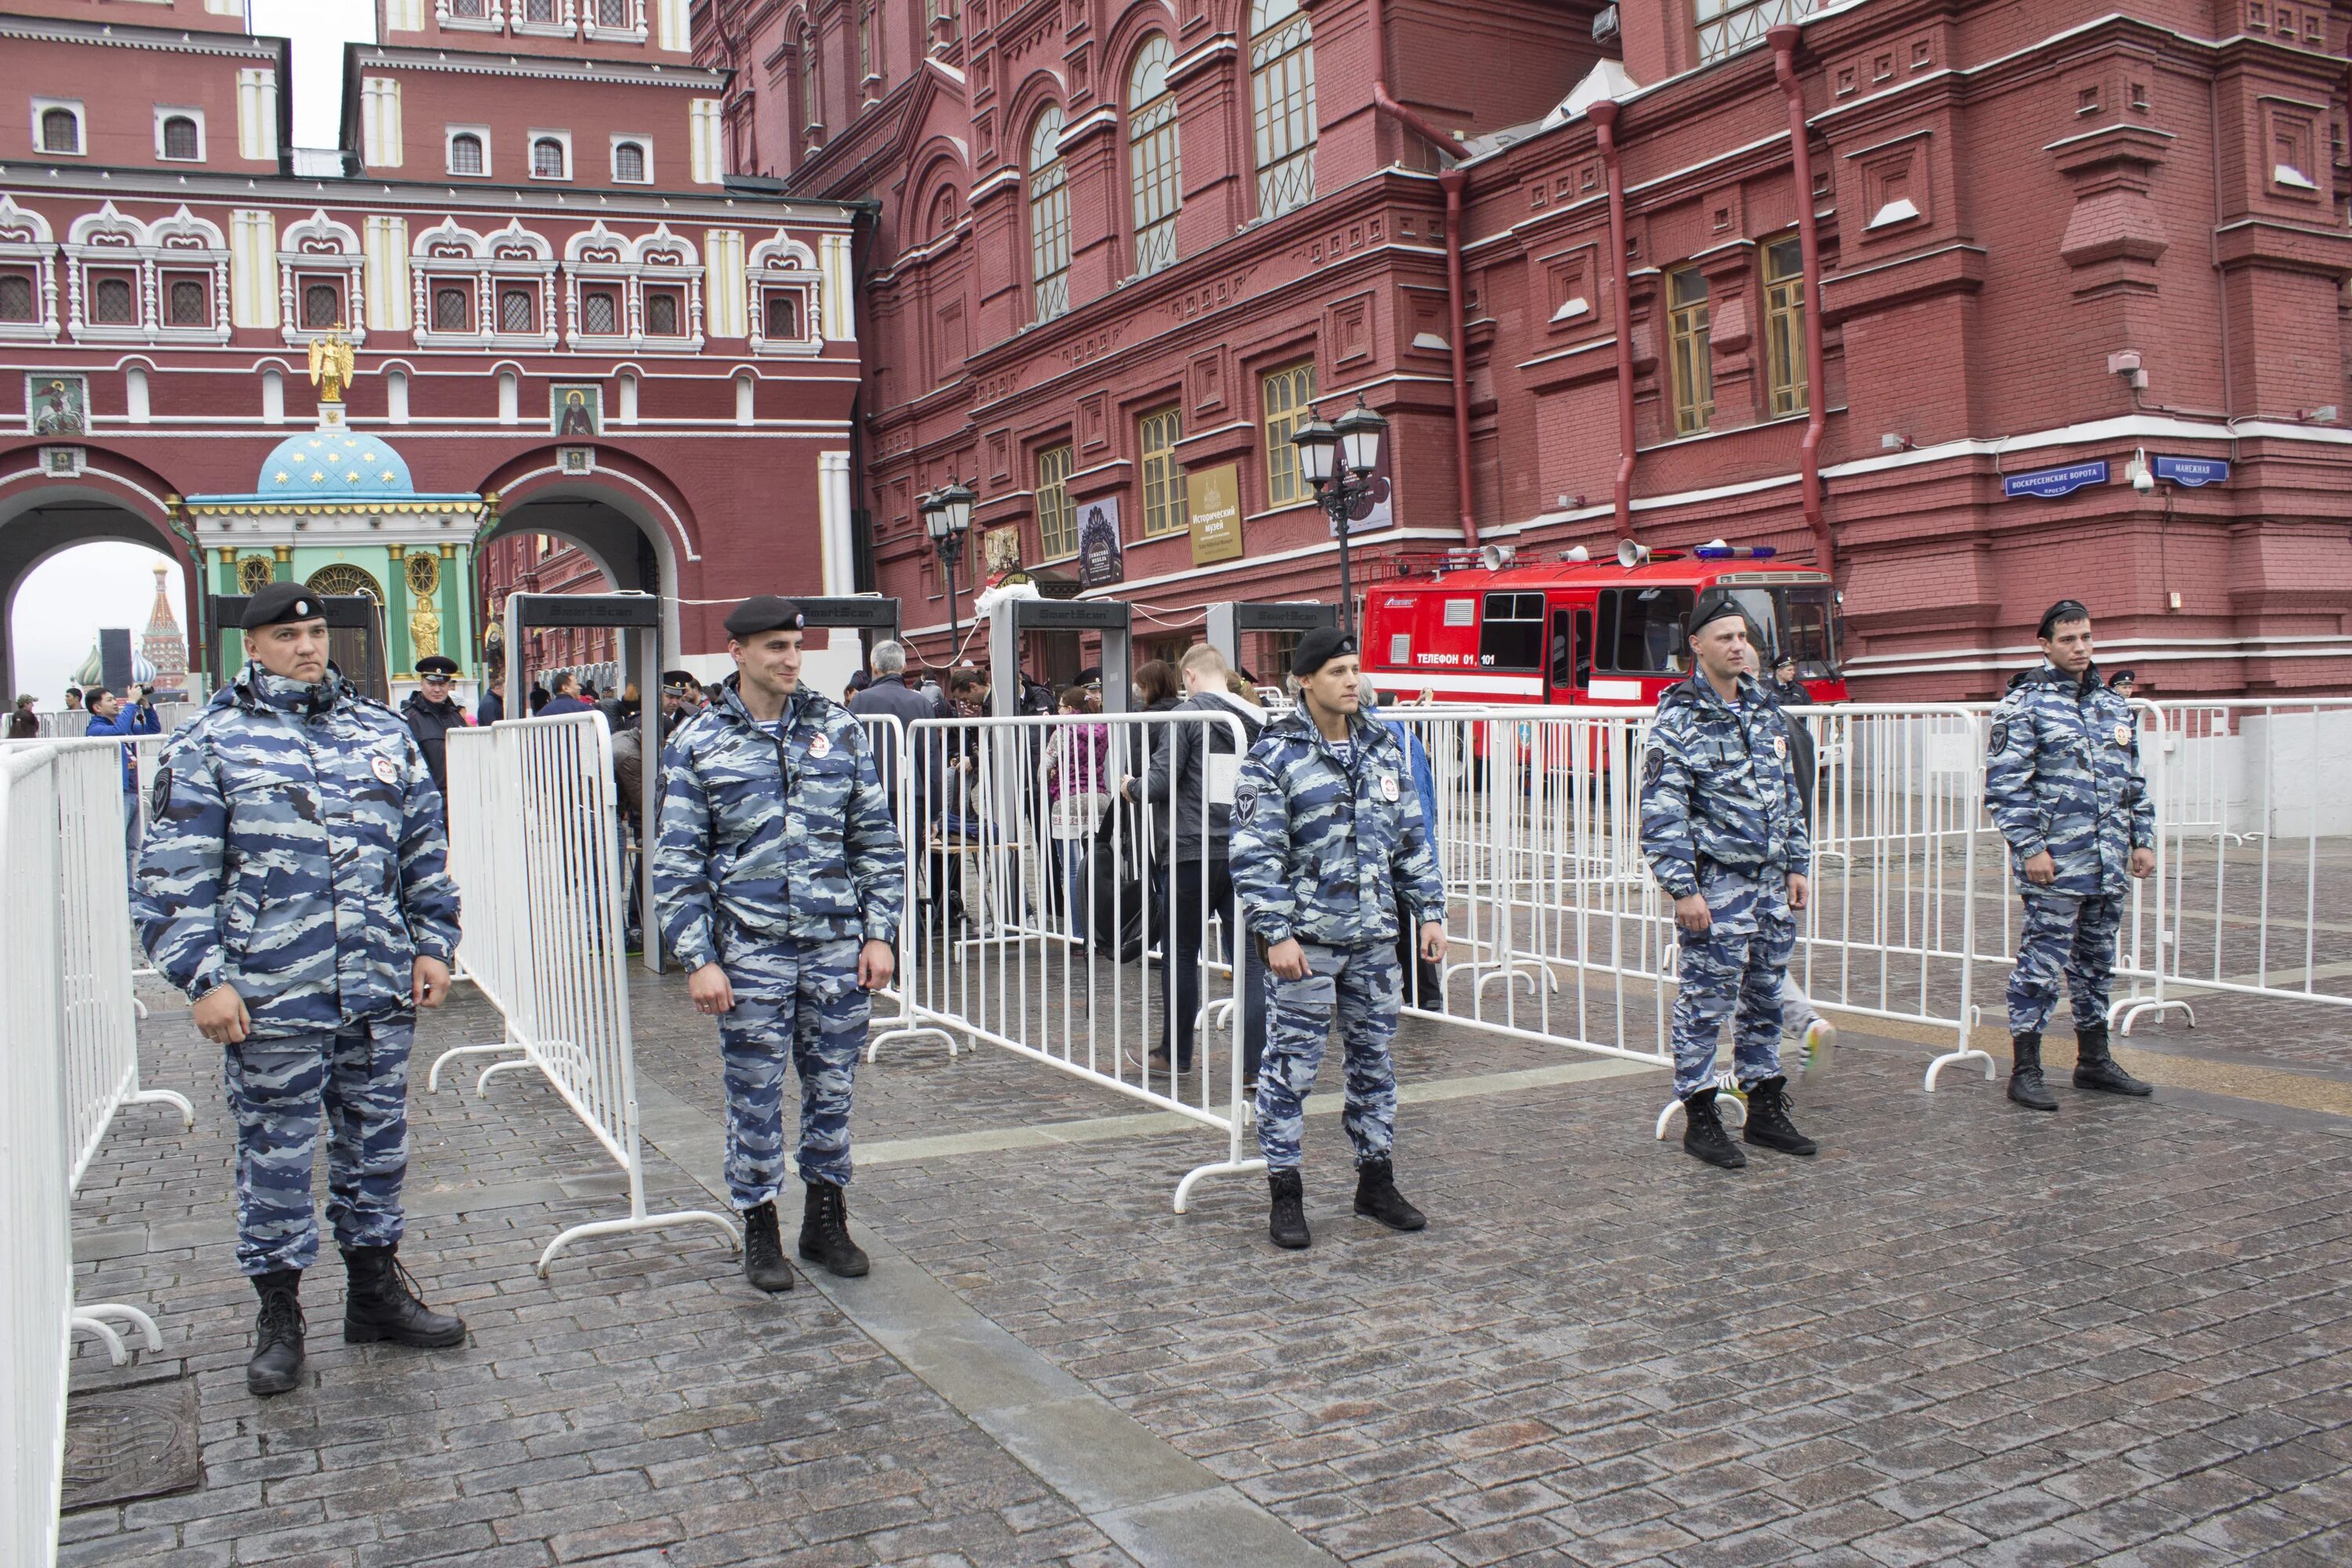 Управление организации общественного порядка. Охрана Кремля в Москве Росгвардия. Охрана общественного порядка. Полицейские на красной площади. Охрана общественного порядка Росгвардии.